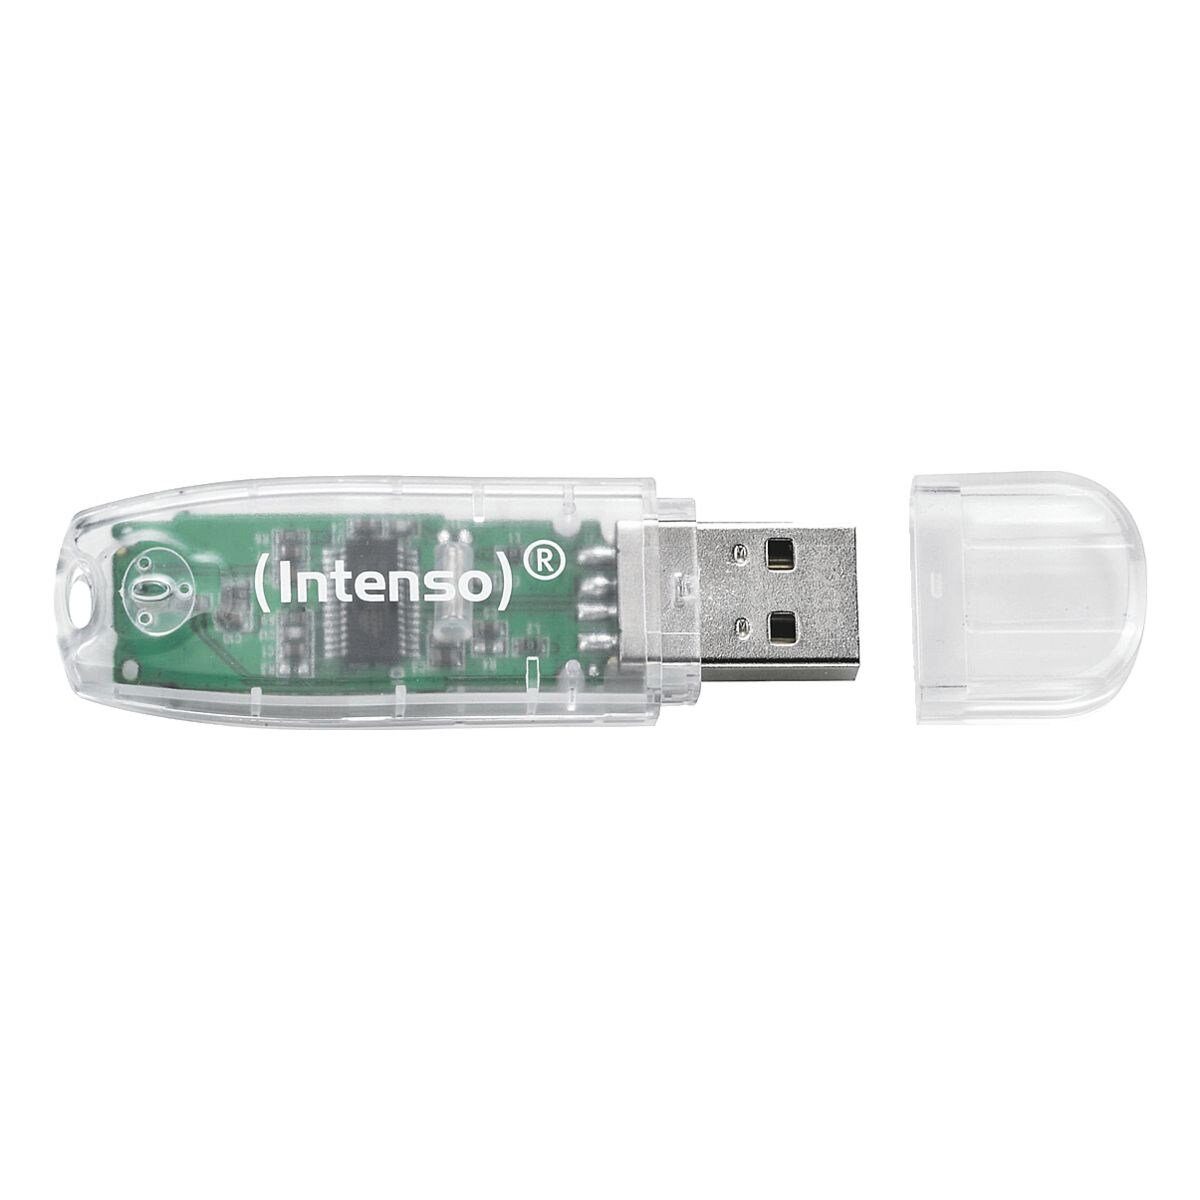 Intenso RainbowLine USB-Stick (Lesegeschwindigkeit 28 MB/s, in farbenfrohem Design)